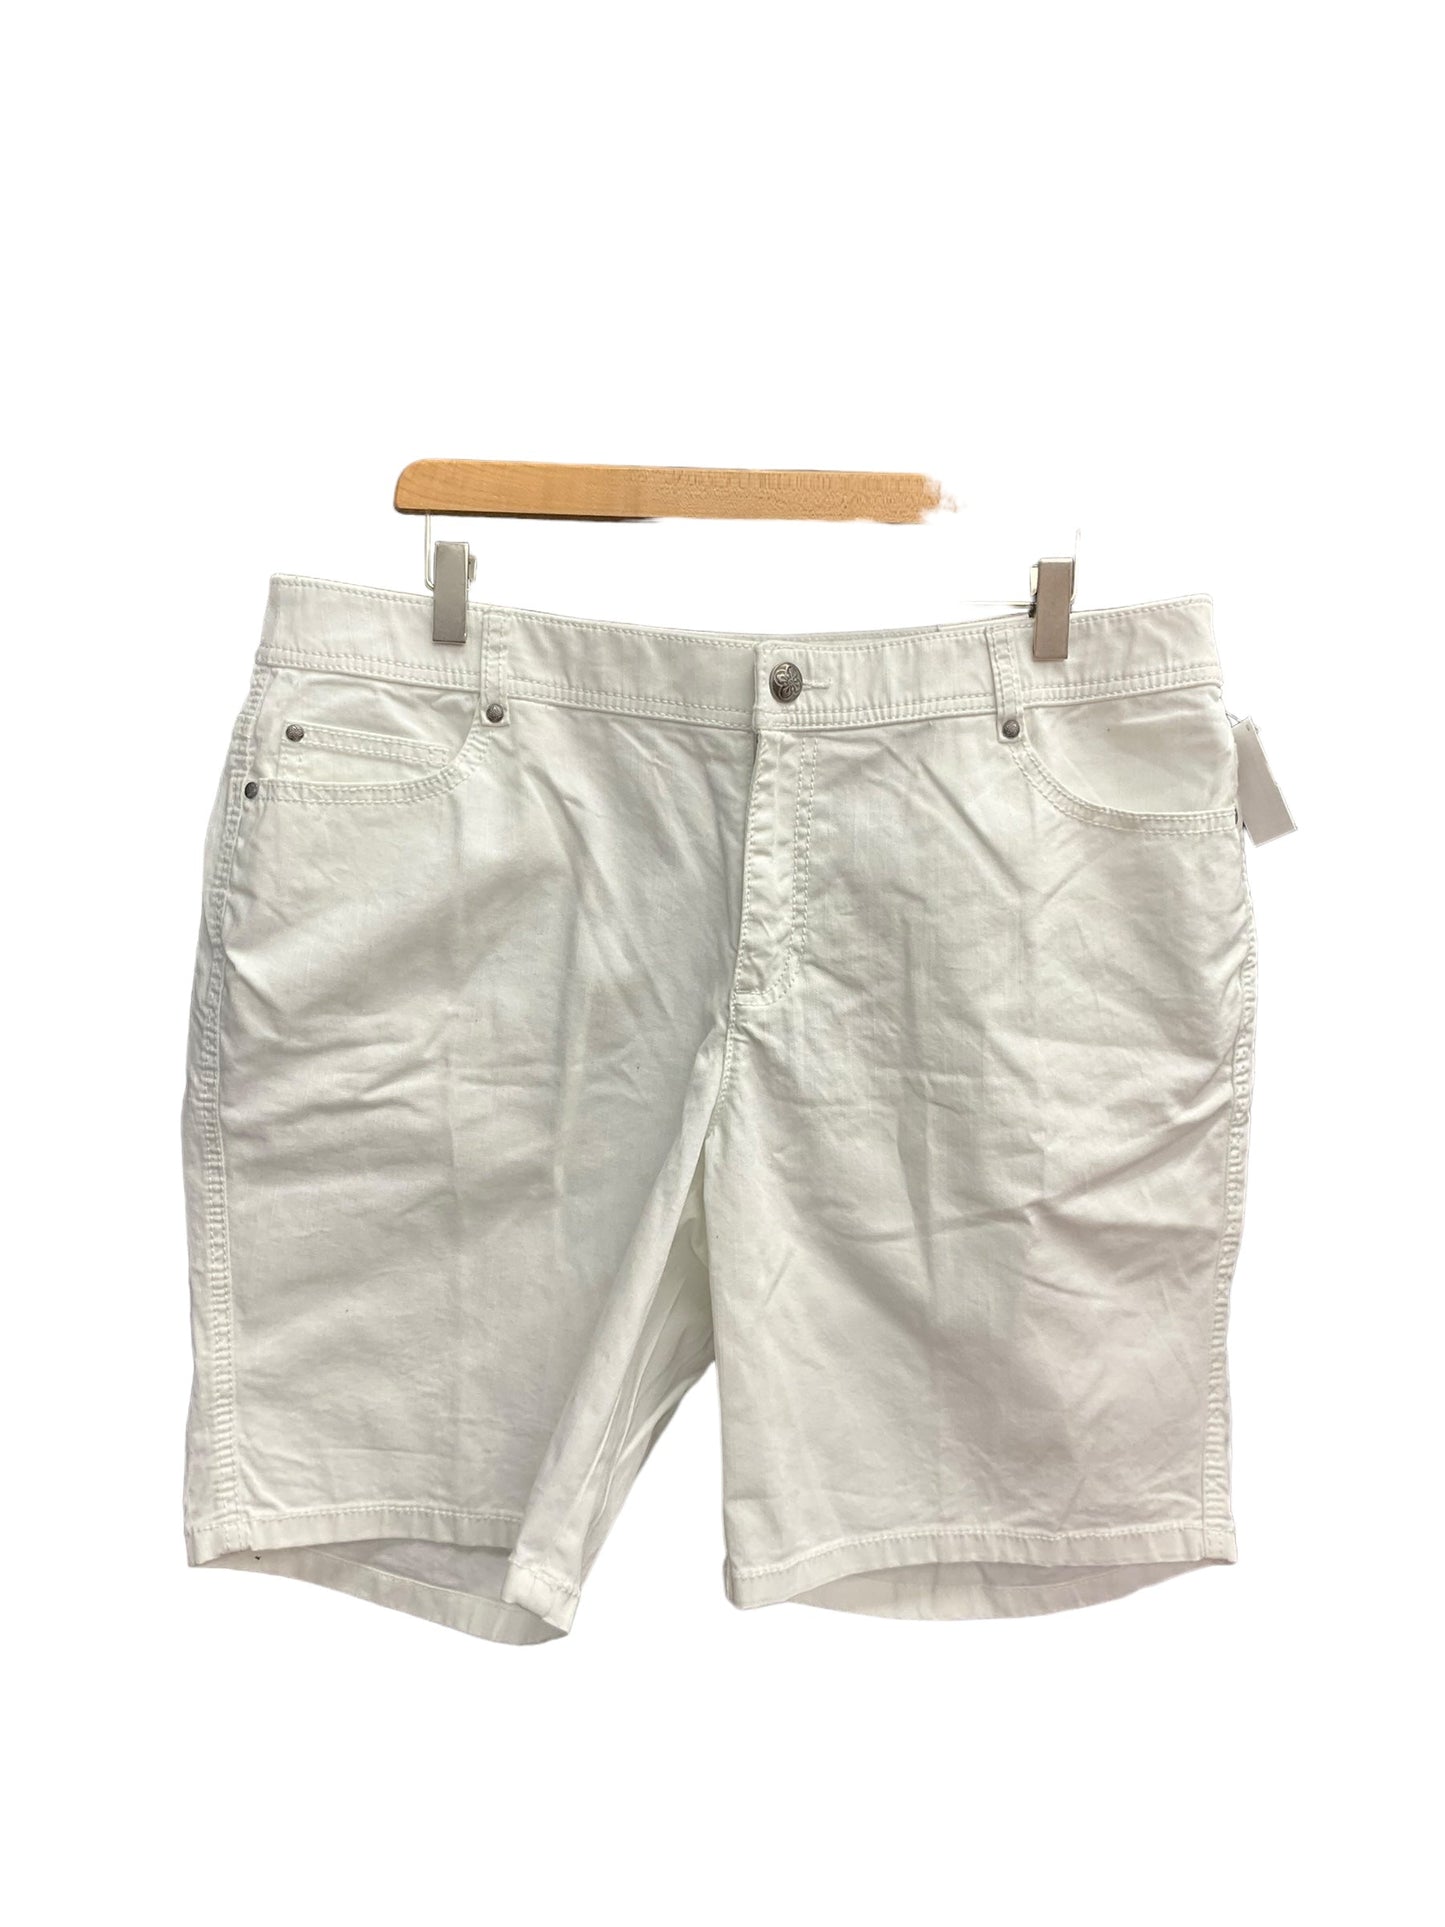 White Shorts Cj Banks, Size 18